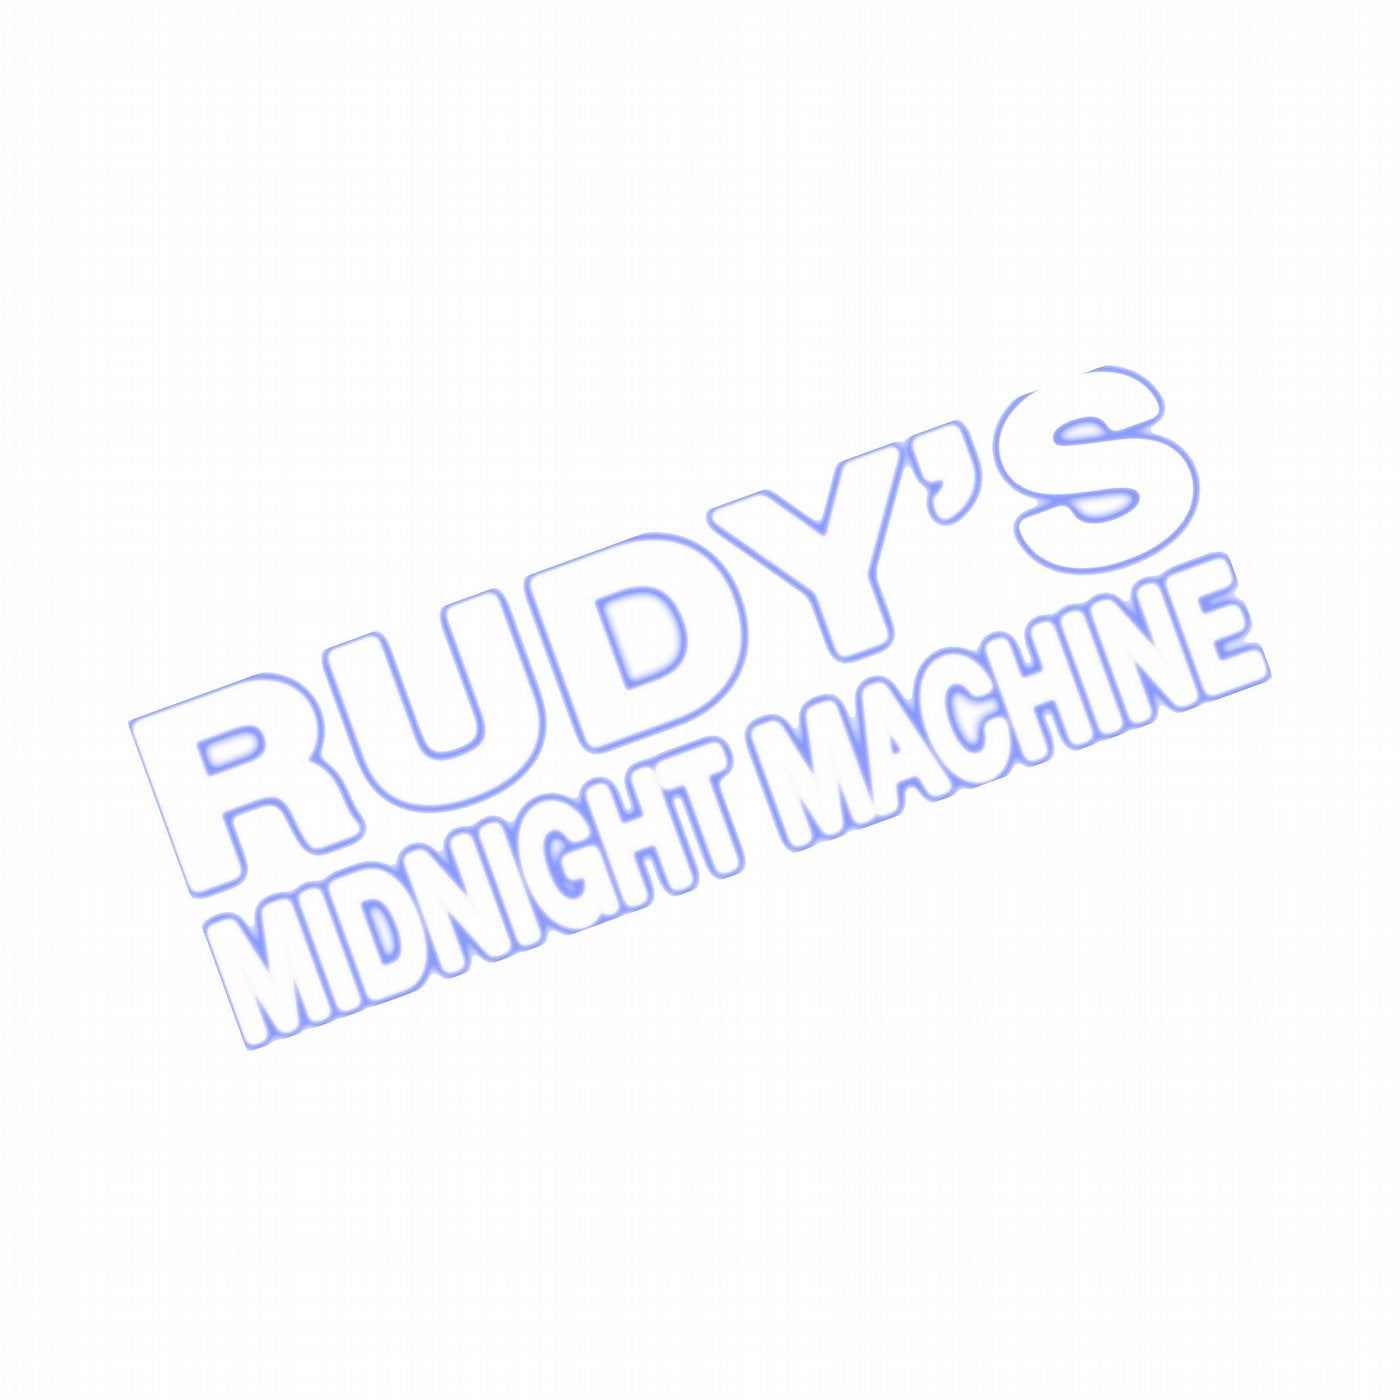 Rudy's Midnight Machine - Resolve Revolver EP